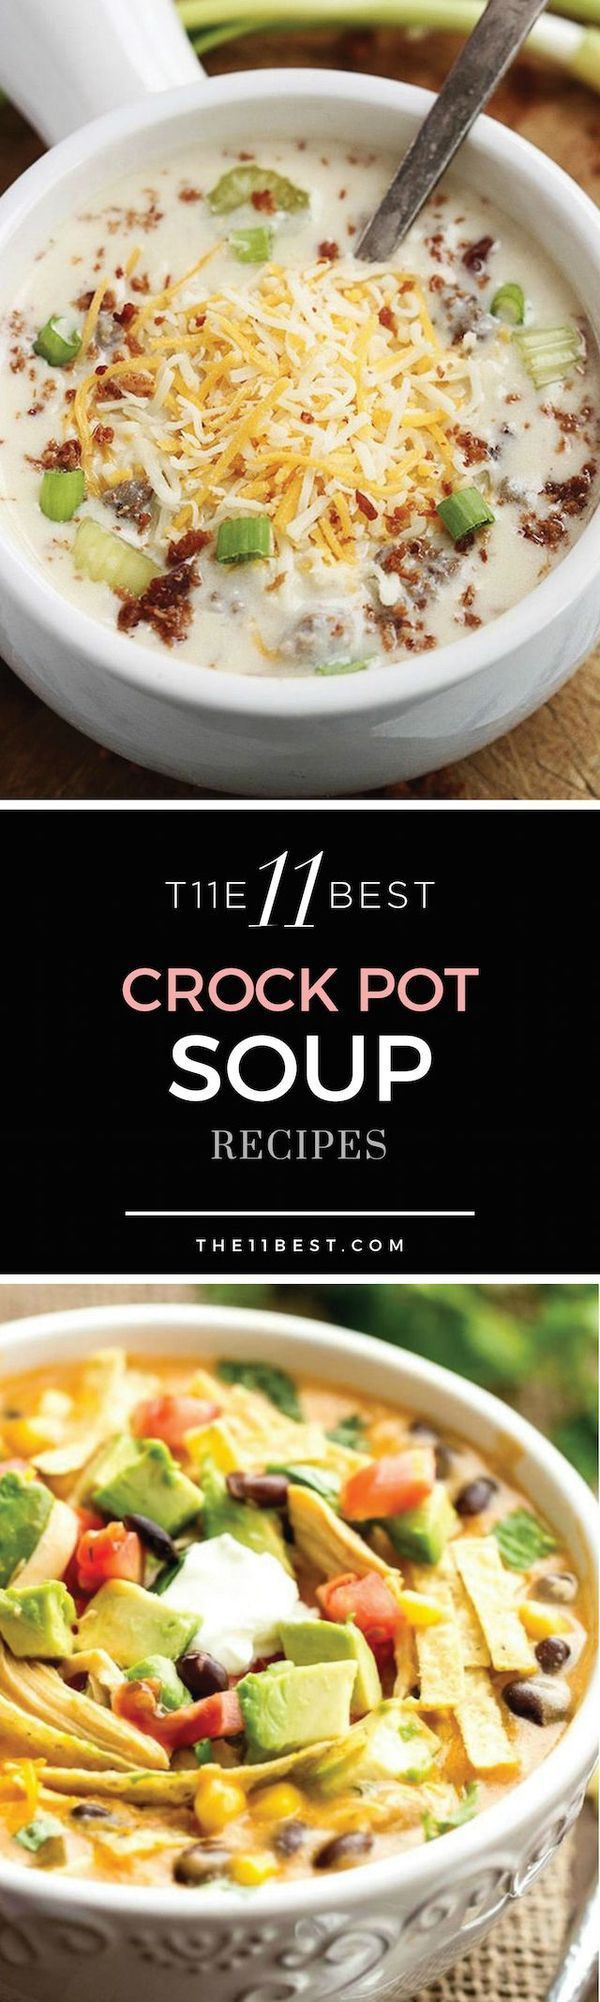 Crock Pot Dinner Recipes
 The 11 Best Crock Pot Soup Recipes